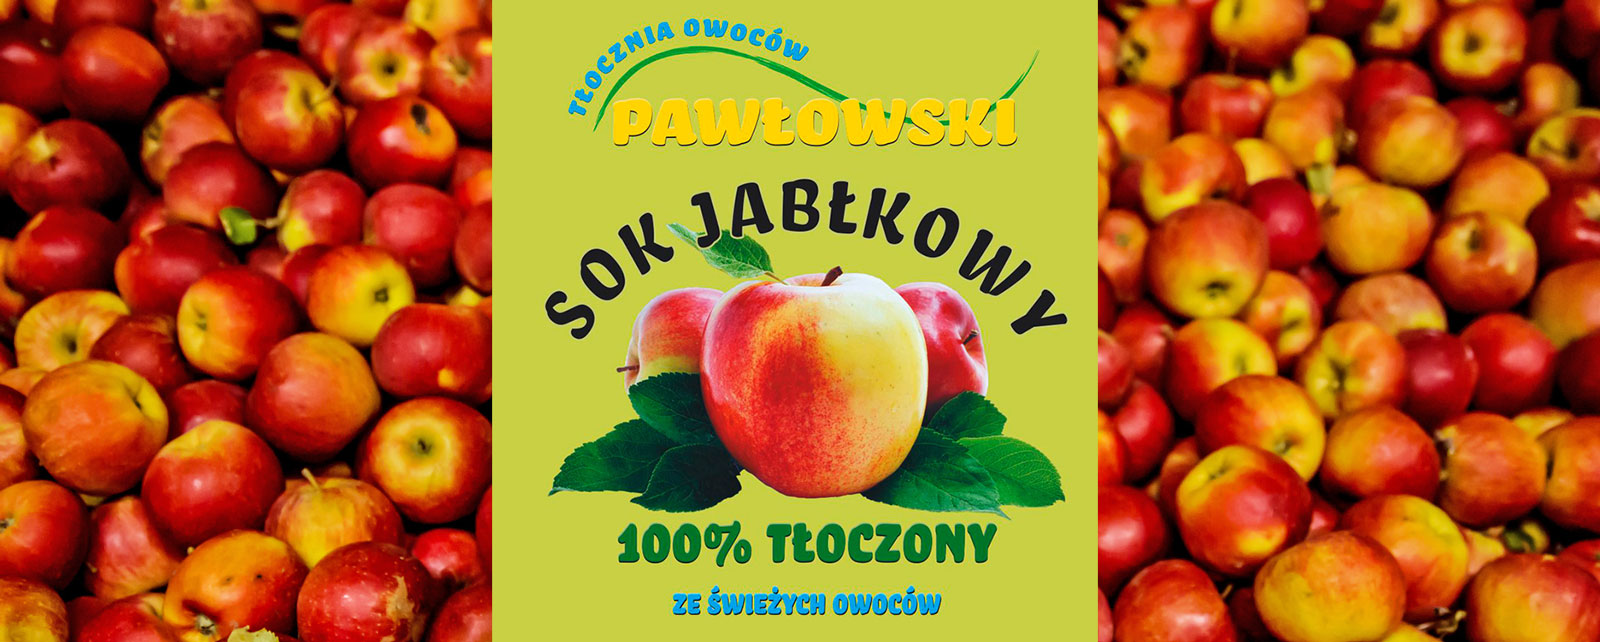 Tłocznia Owoców Pawłowski